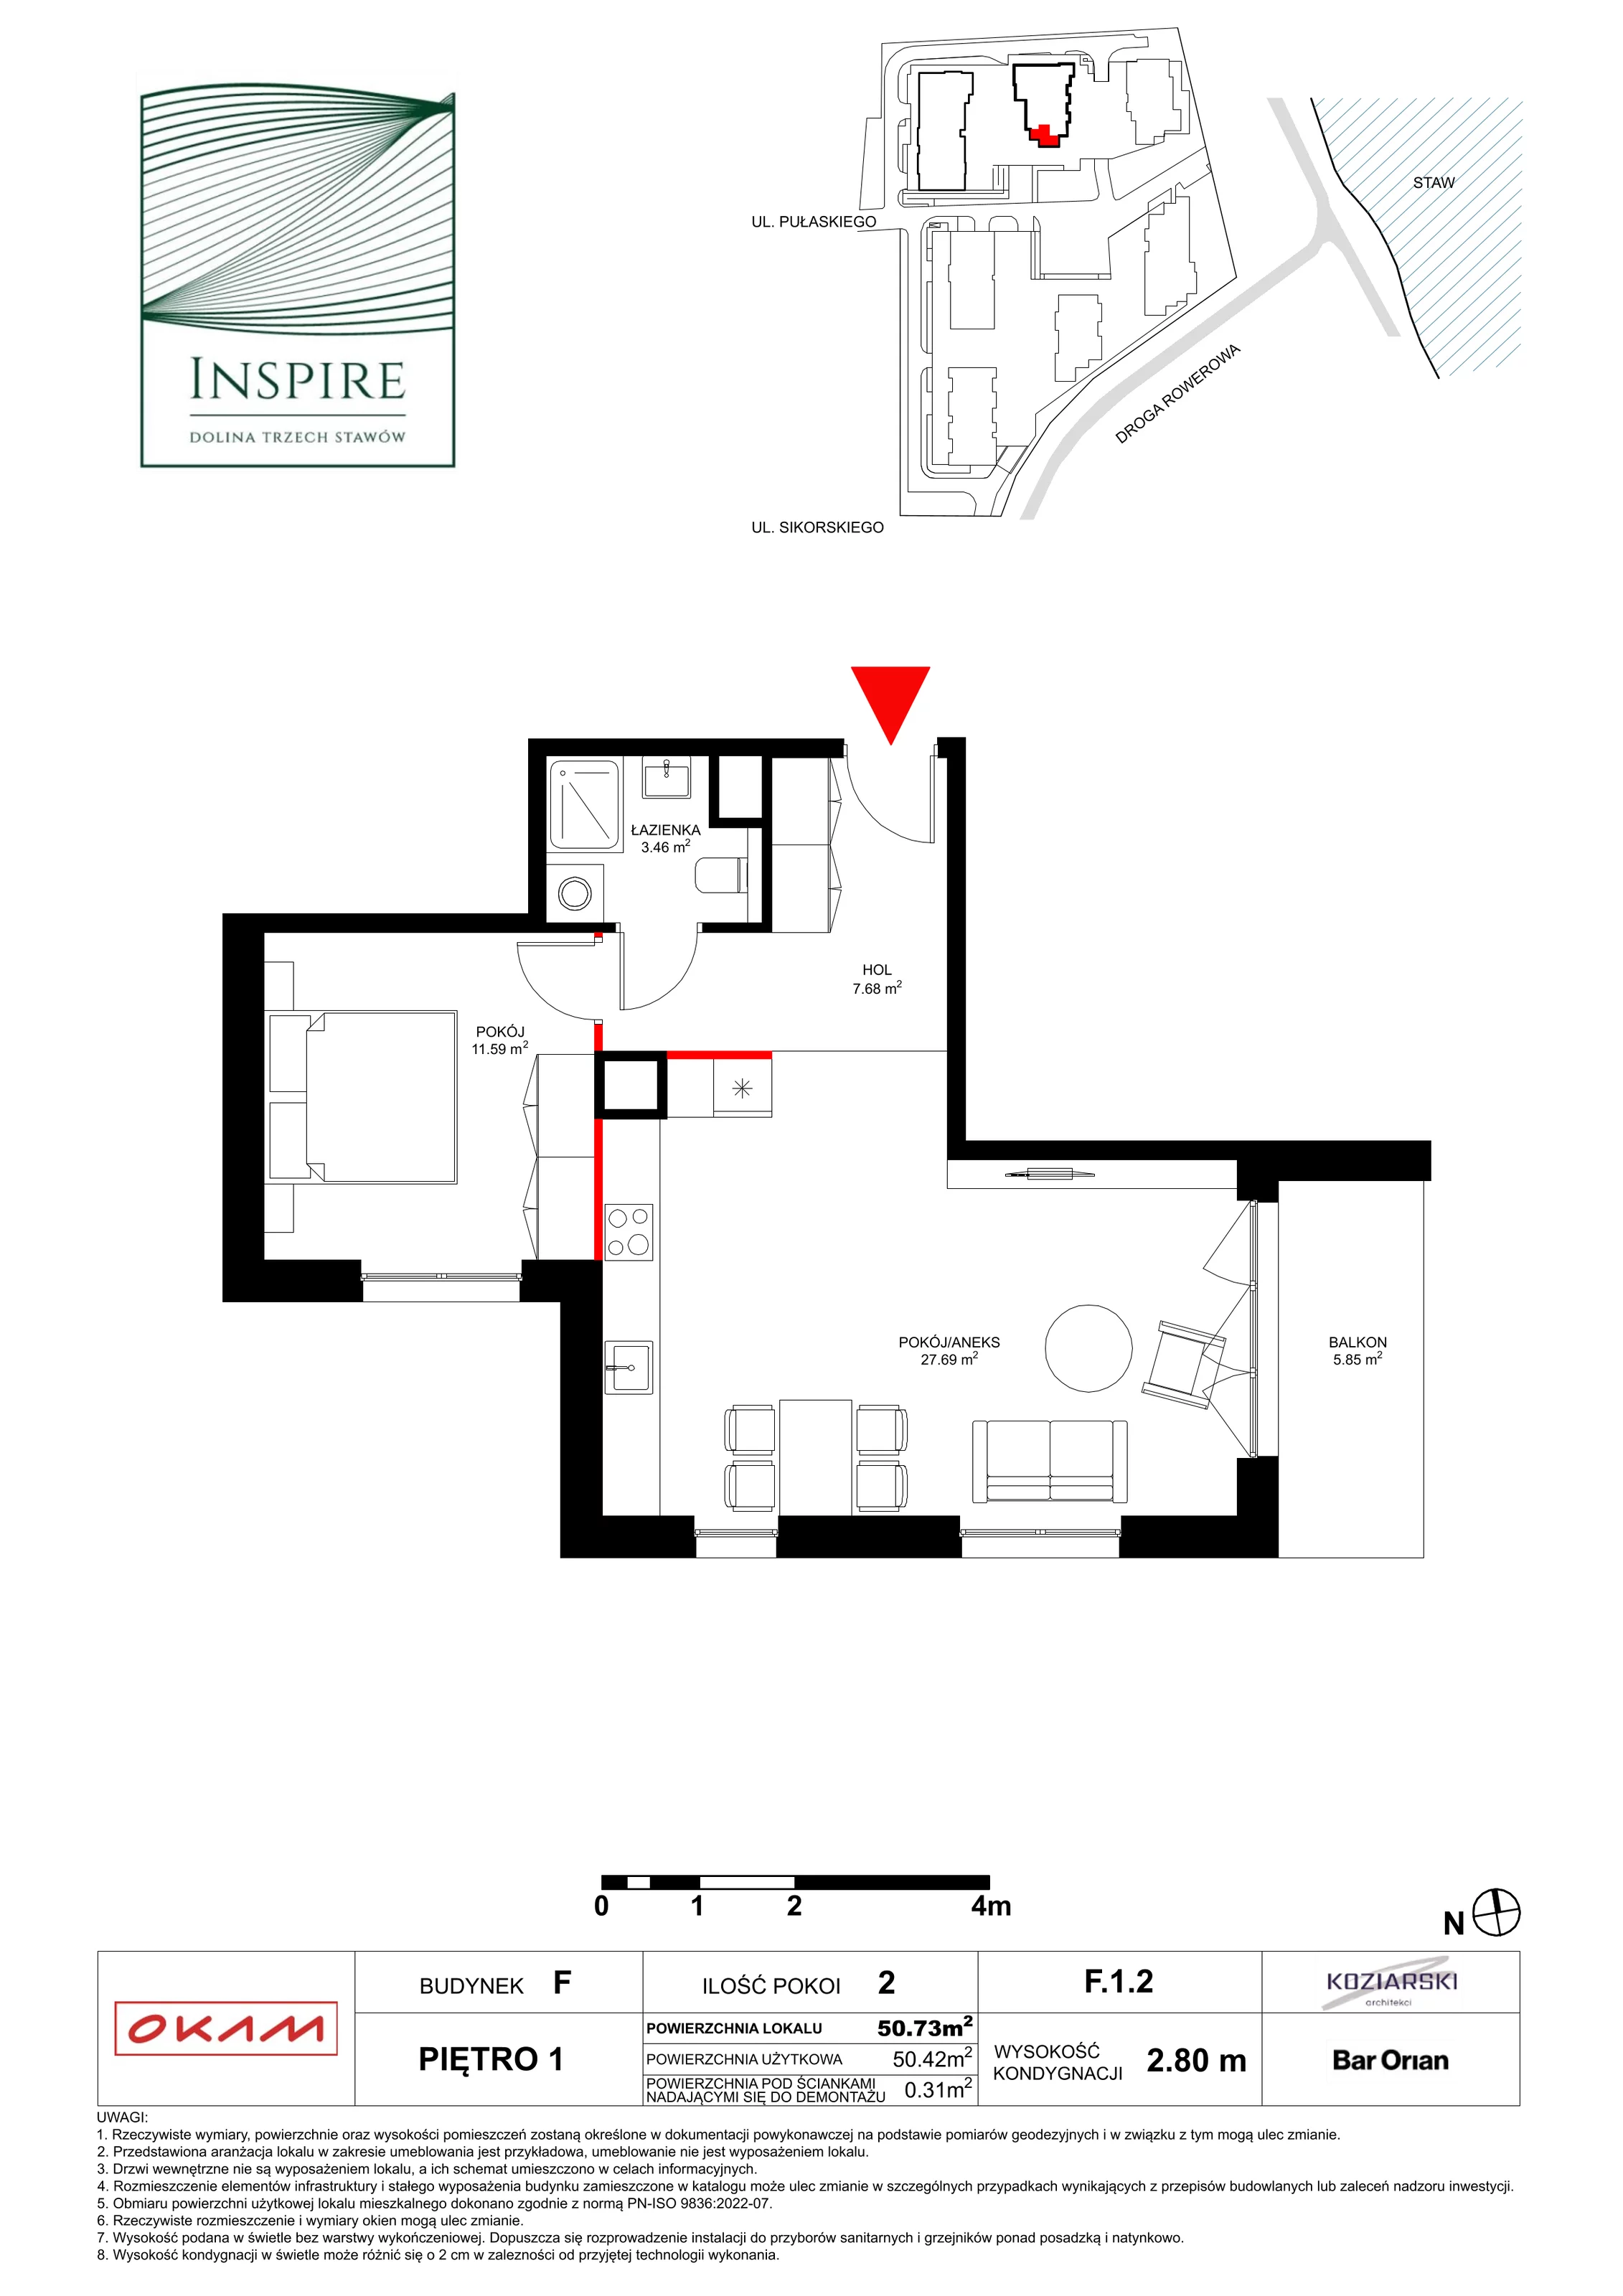 Apartament 50,25 m², piętro 1, oferta nr F.1.2, Inspire, Katowice, Osiedle Paderewskiego-Muchowiec, Dolina Trzech Stawów, ul. gen. Sikorskiego 41